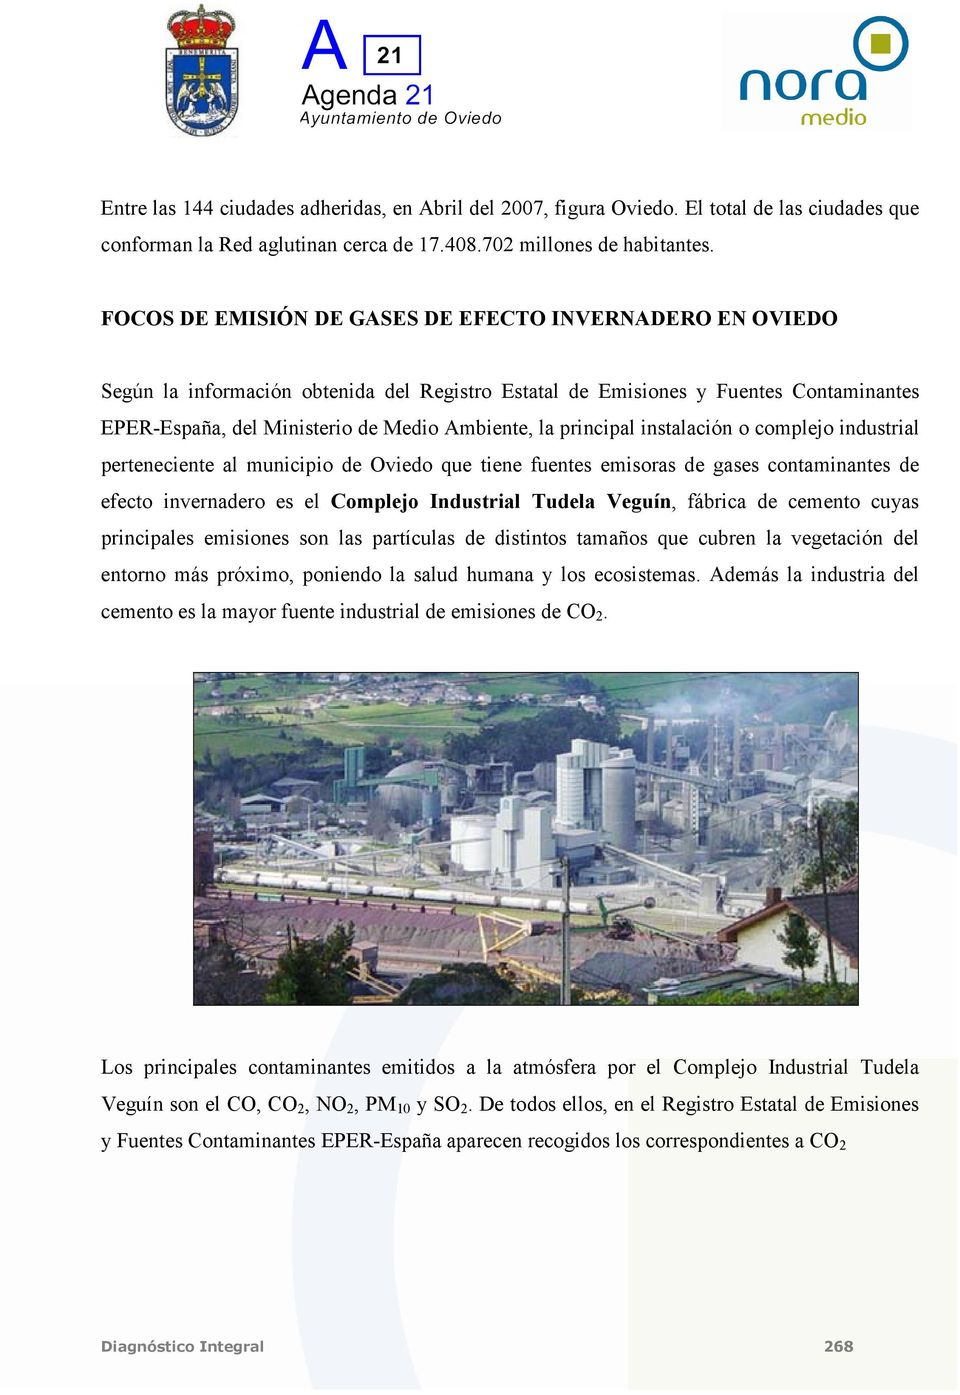 principal instalación o complejo industrial perteneciente al municipio de Oviedo que tiene fuentes emisoras de gases contaminantes de efecto invernadero es el Complejo Industrial Tudela Veguín,